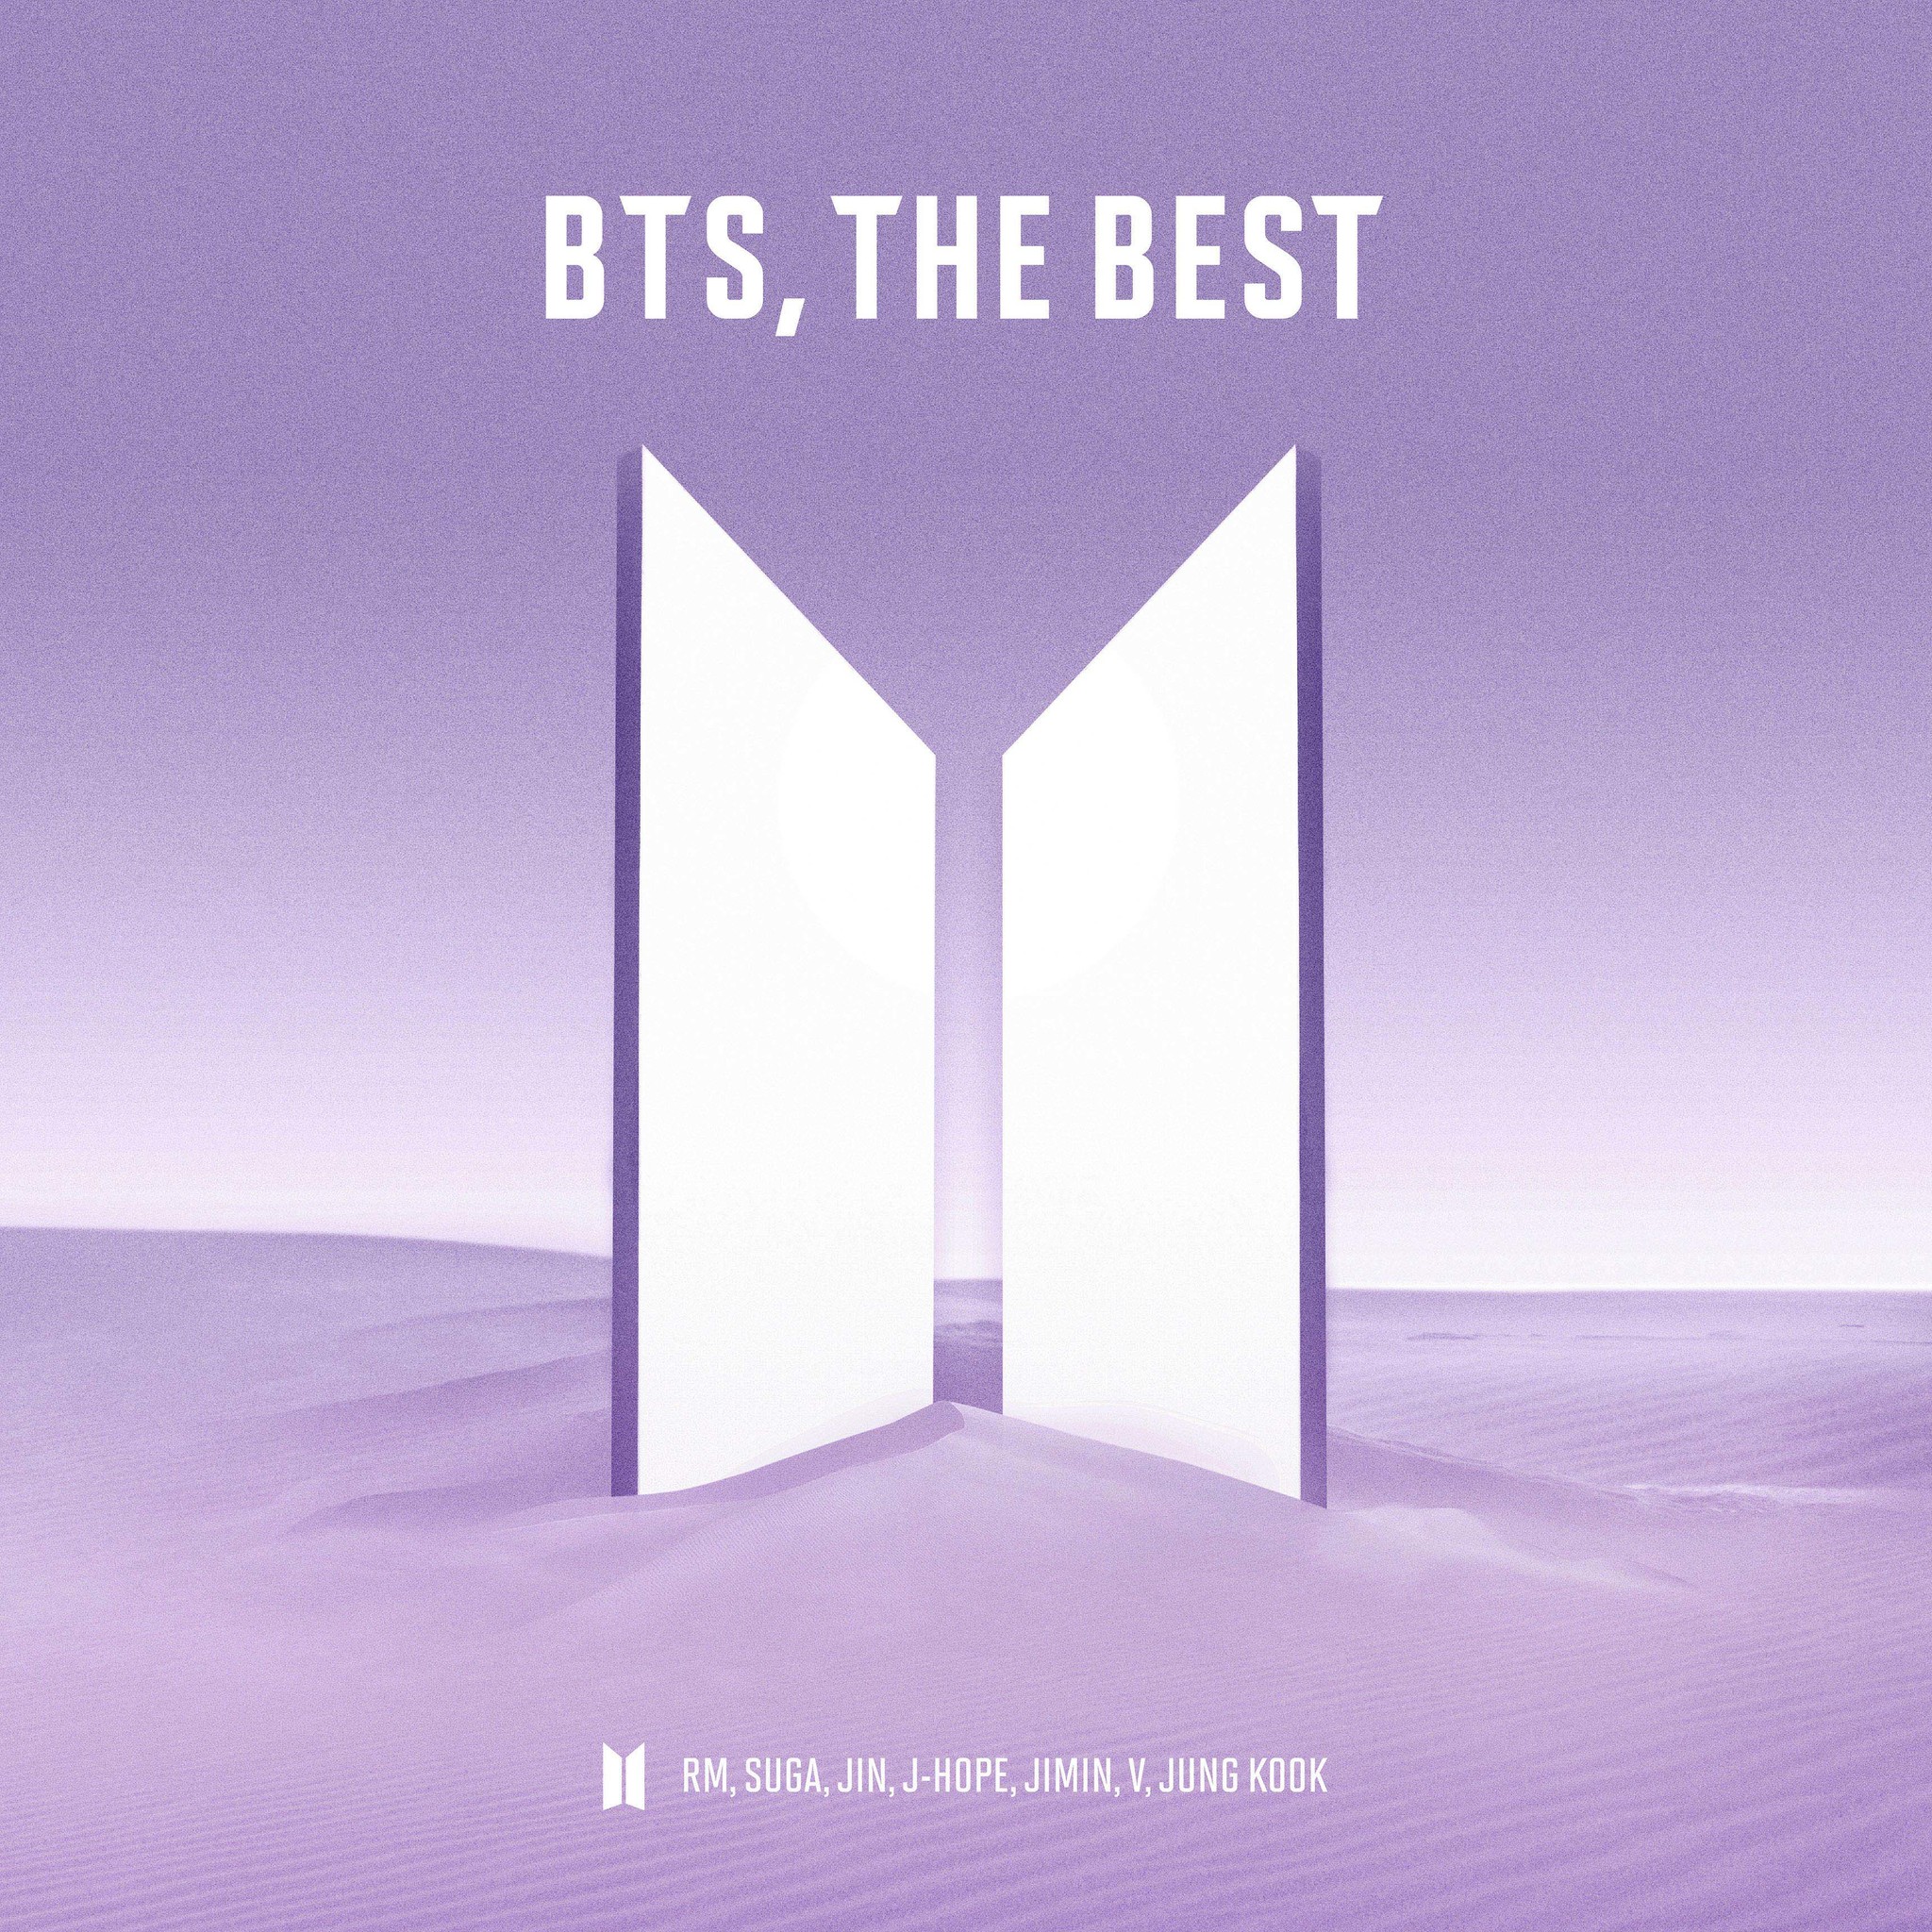 BTS、歴代ヒット曲含む全23曲を収録したベストアルバム「BTS, THE BEST」6月16日発売！｜ユニバーサル ミュージック合同会社の